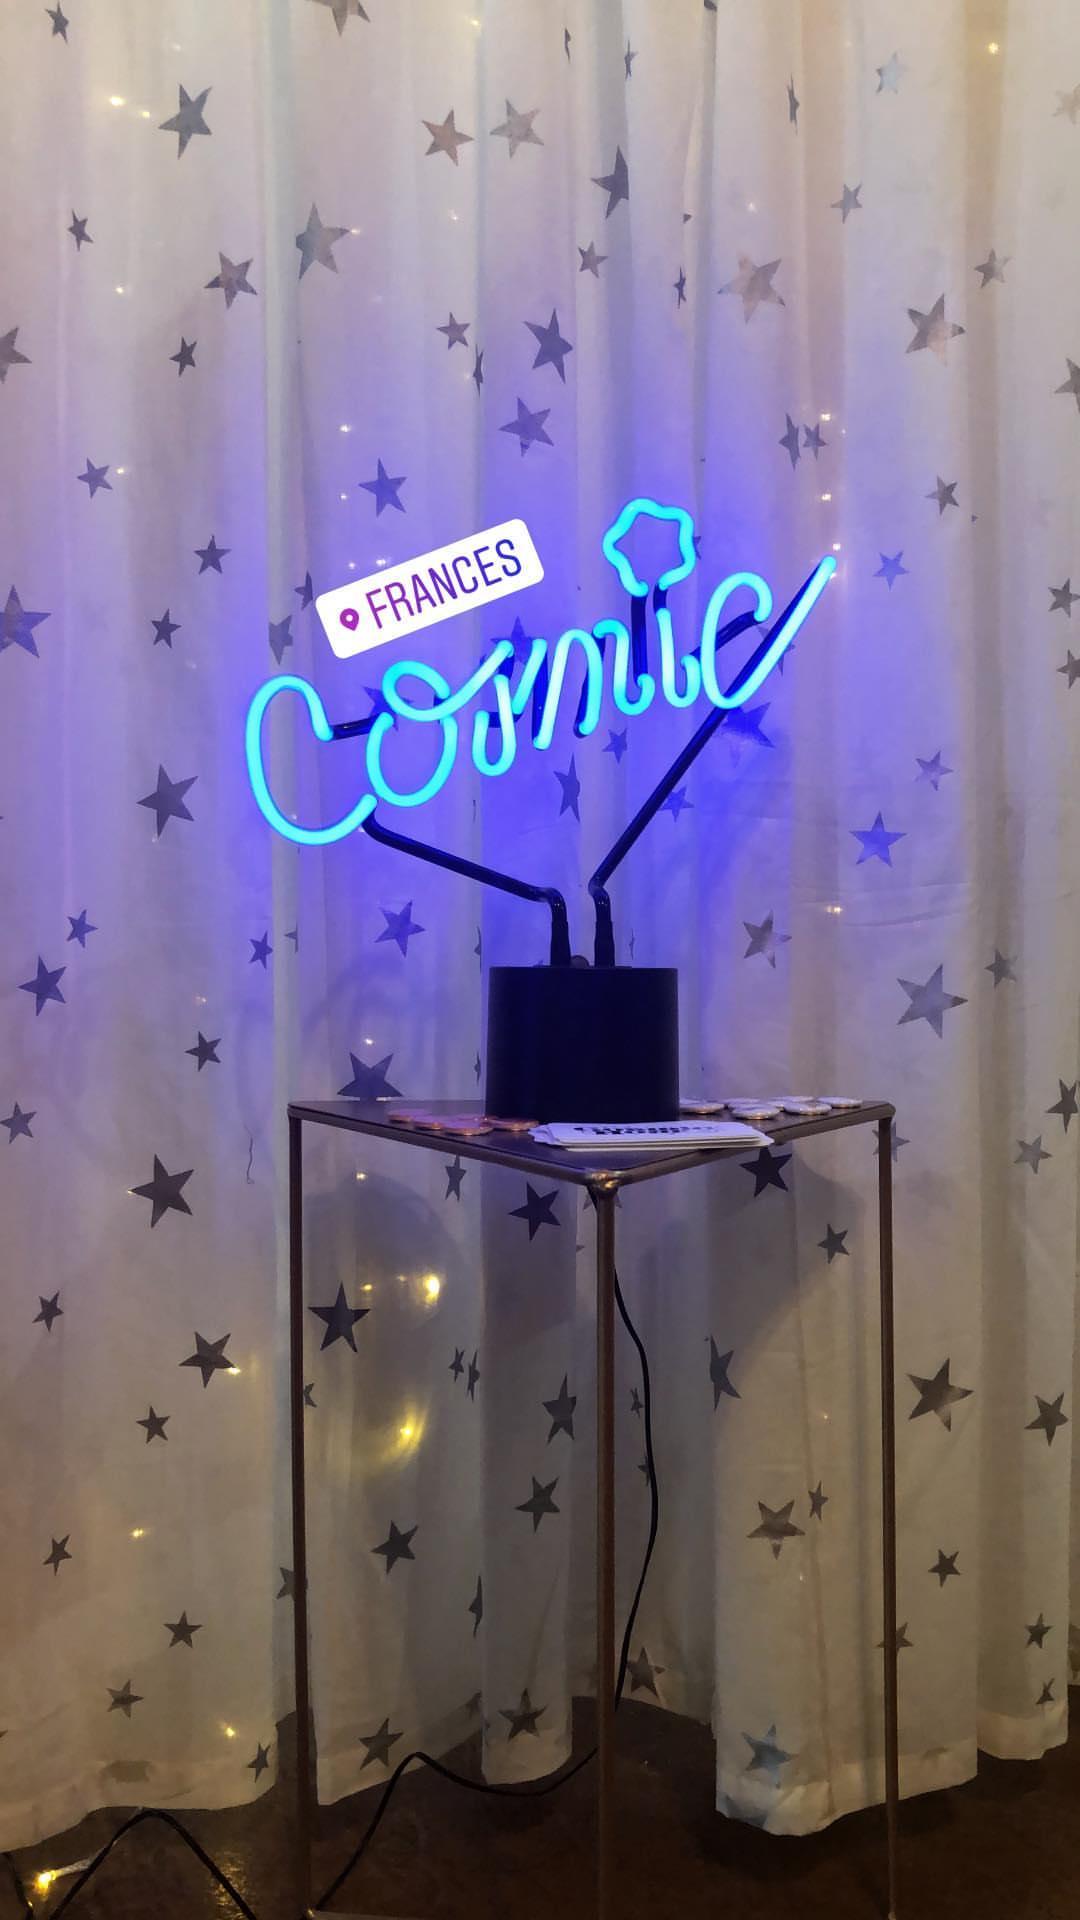 Cosmic Hour's set up at Frances boutique in Phoenix, AZ 